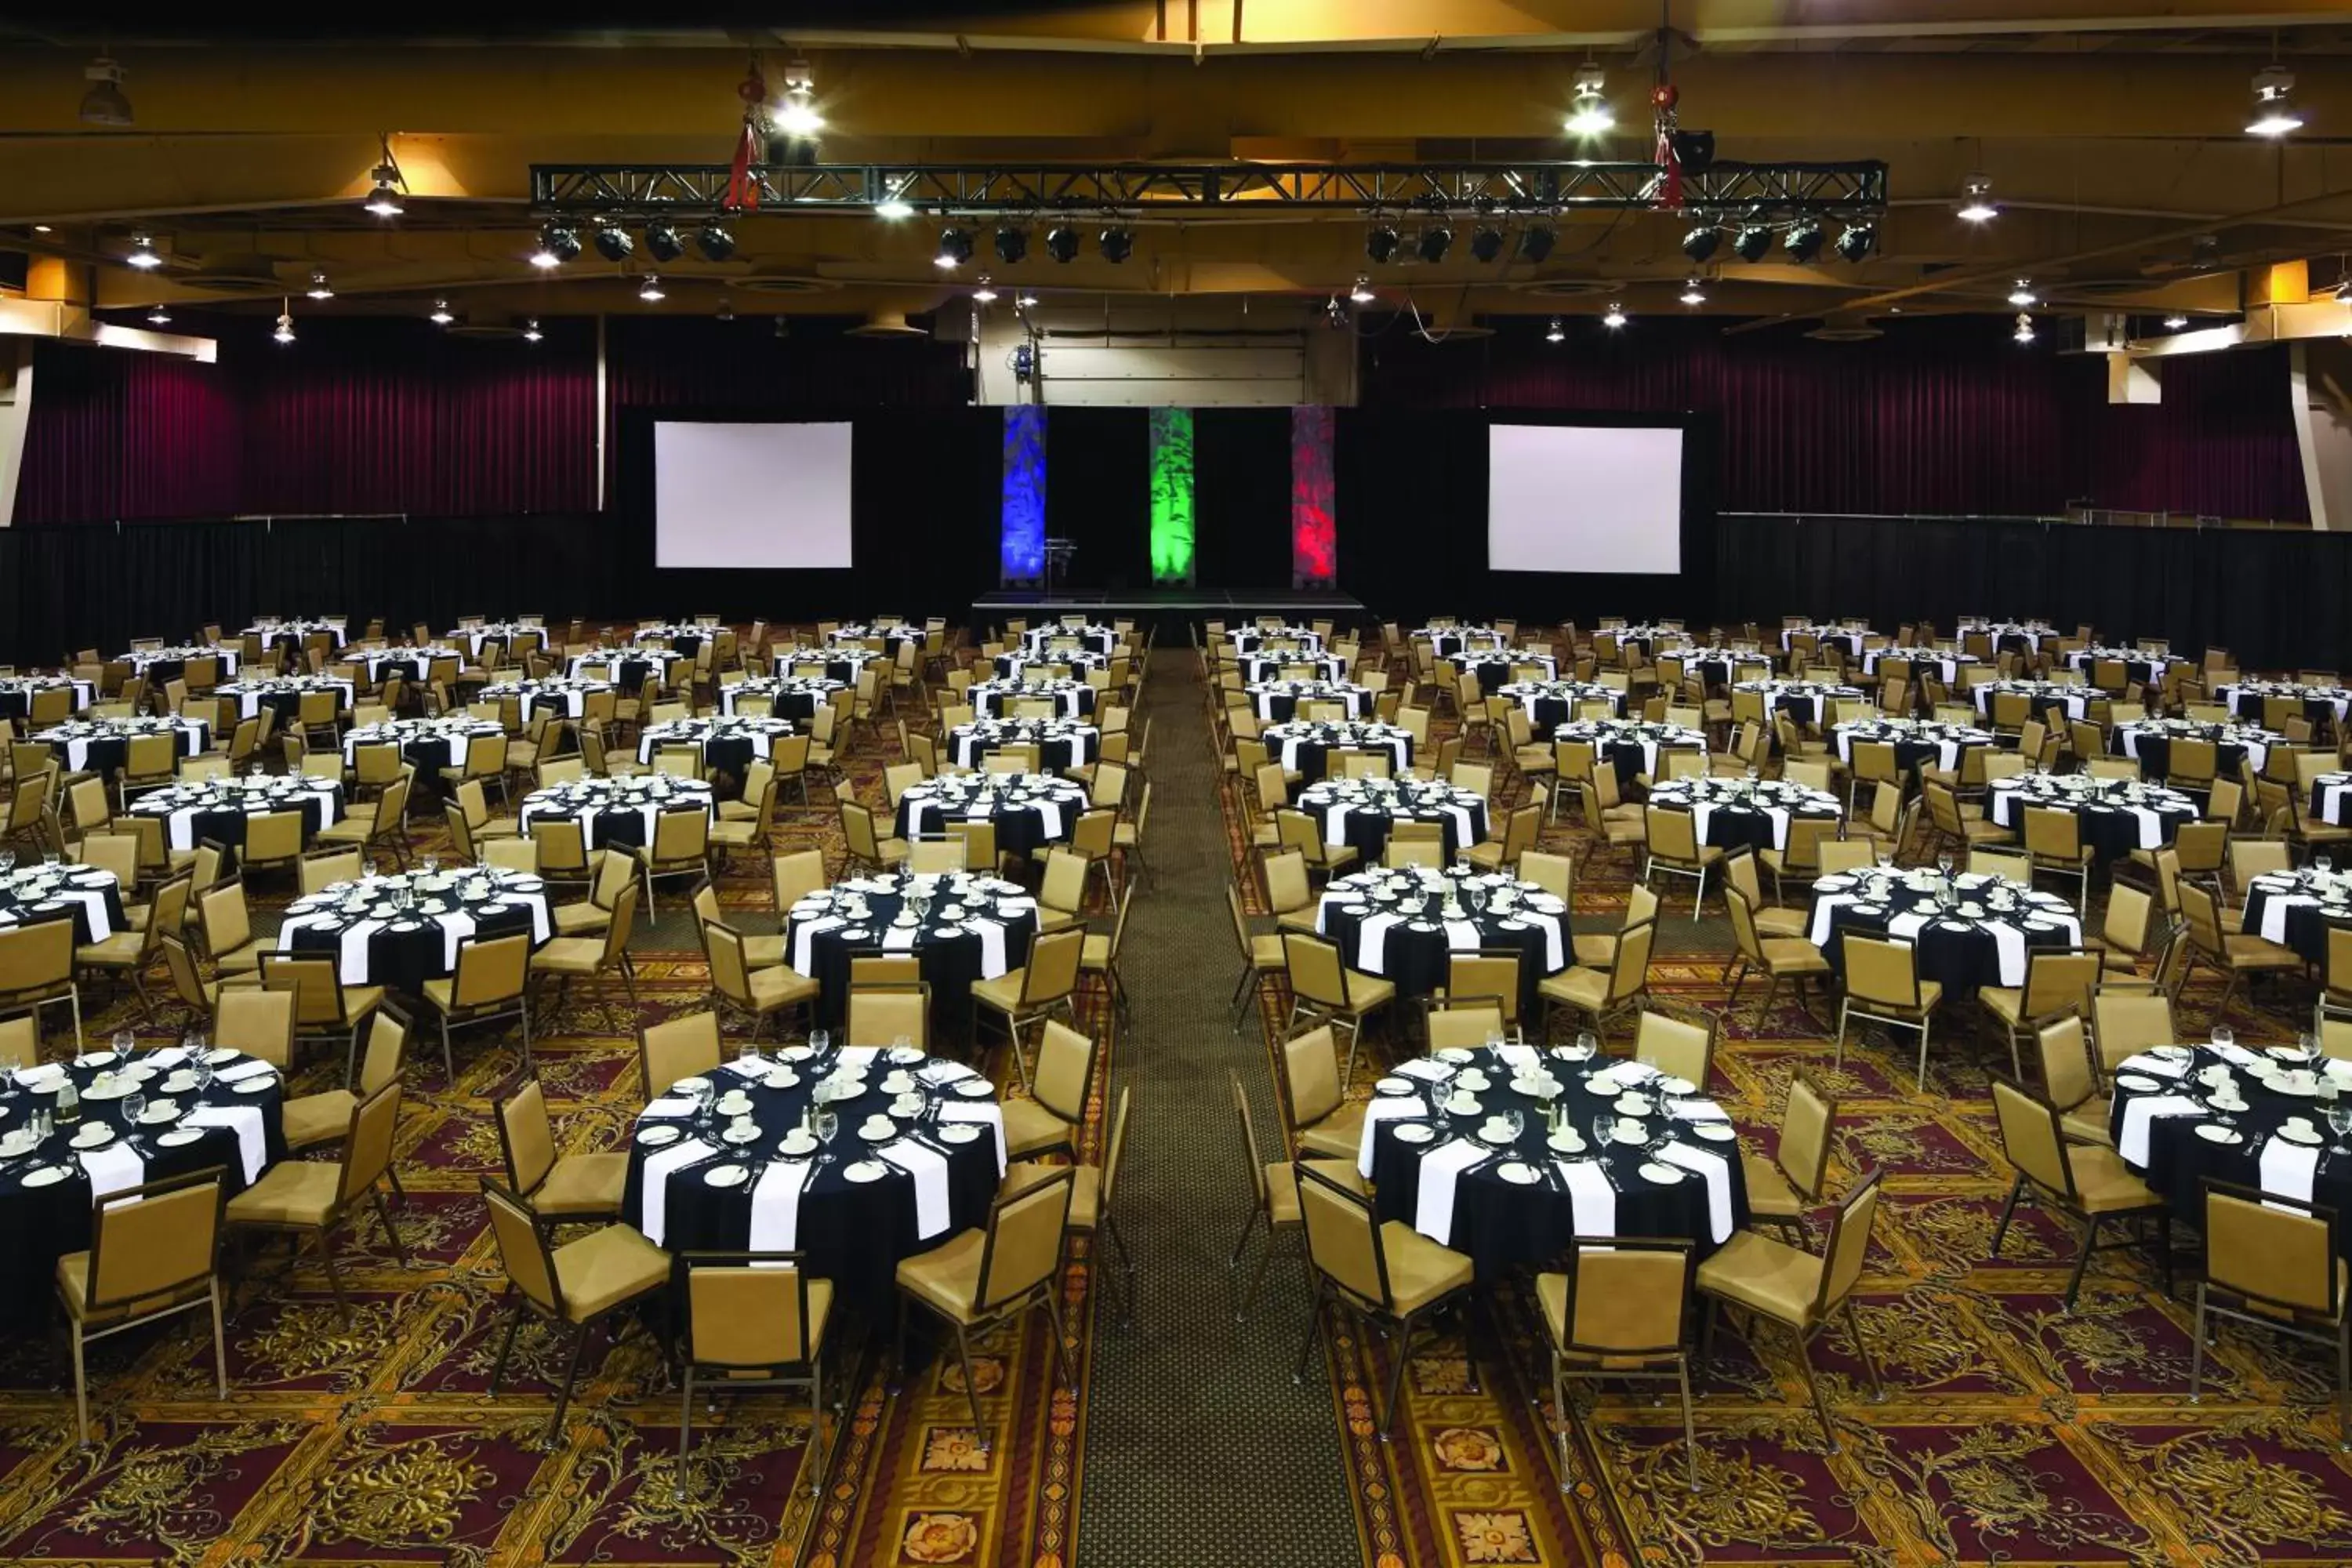 Business facilities, Banquet Facilities in Red Deer Resort & Casino